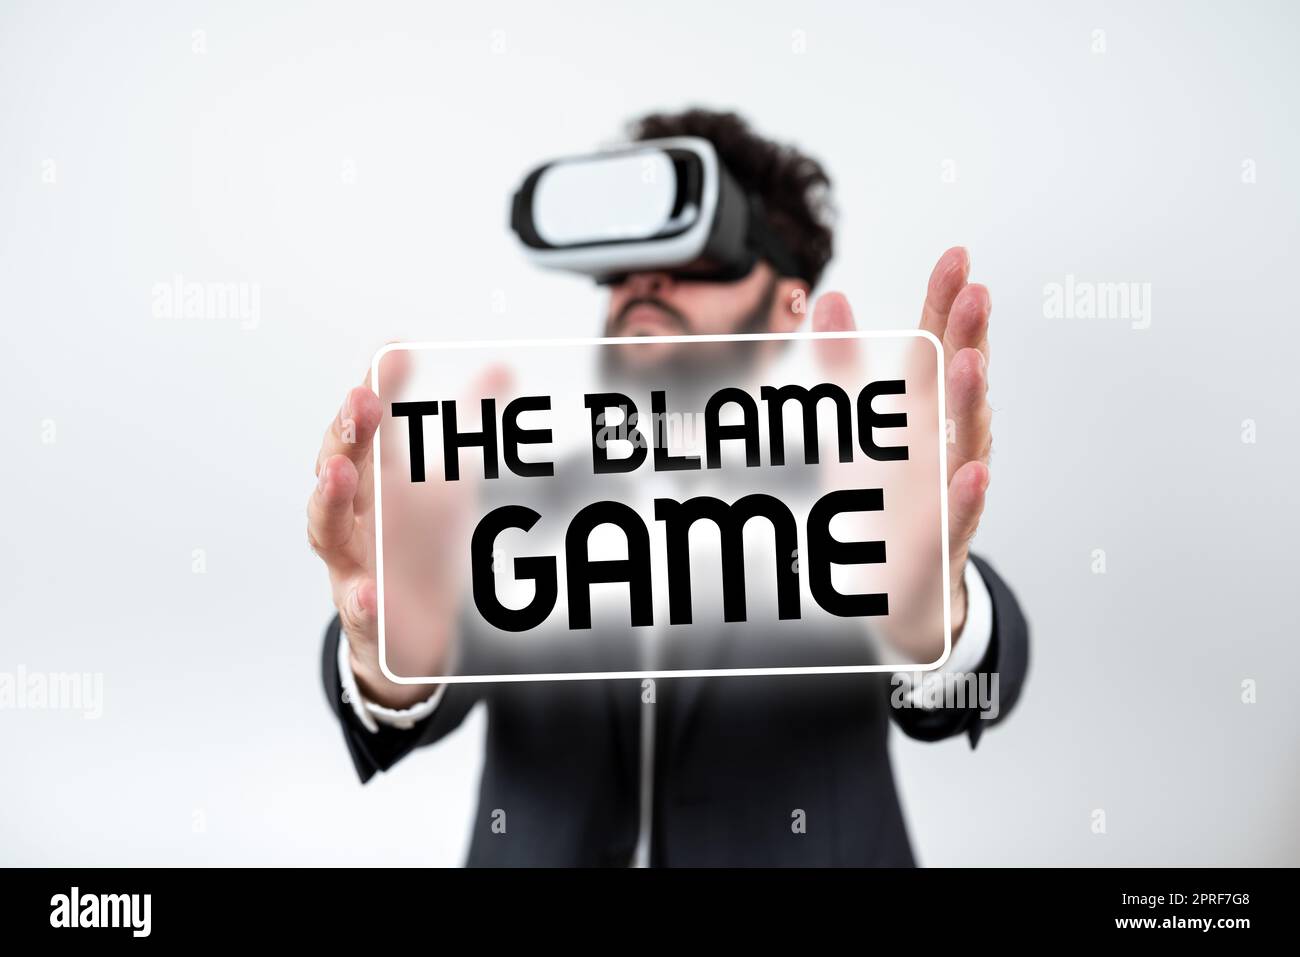 Konzeptionelle Darstellung der Schuld GameA Situation, wenn Menschen versuchen, sich gegenseitig die Schuld zu geben. Konzeptfoto Eine Situation, in der versucht wird, sich gegenseitig die Schuld zu geben zirkuläre Denkblasen, die Botschaften in sozialen Medien darstellen. Stockfoto